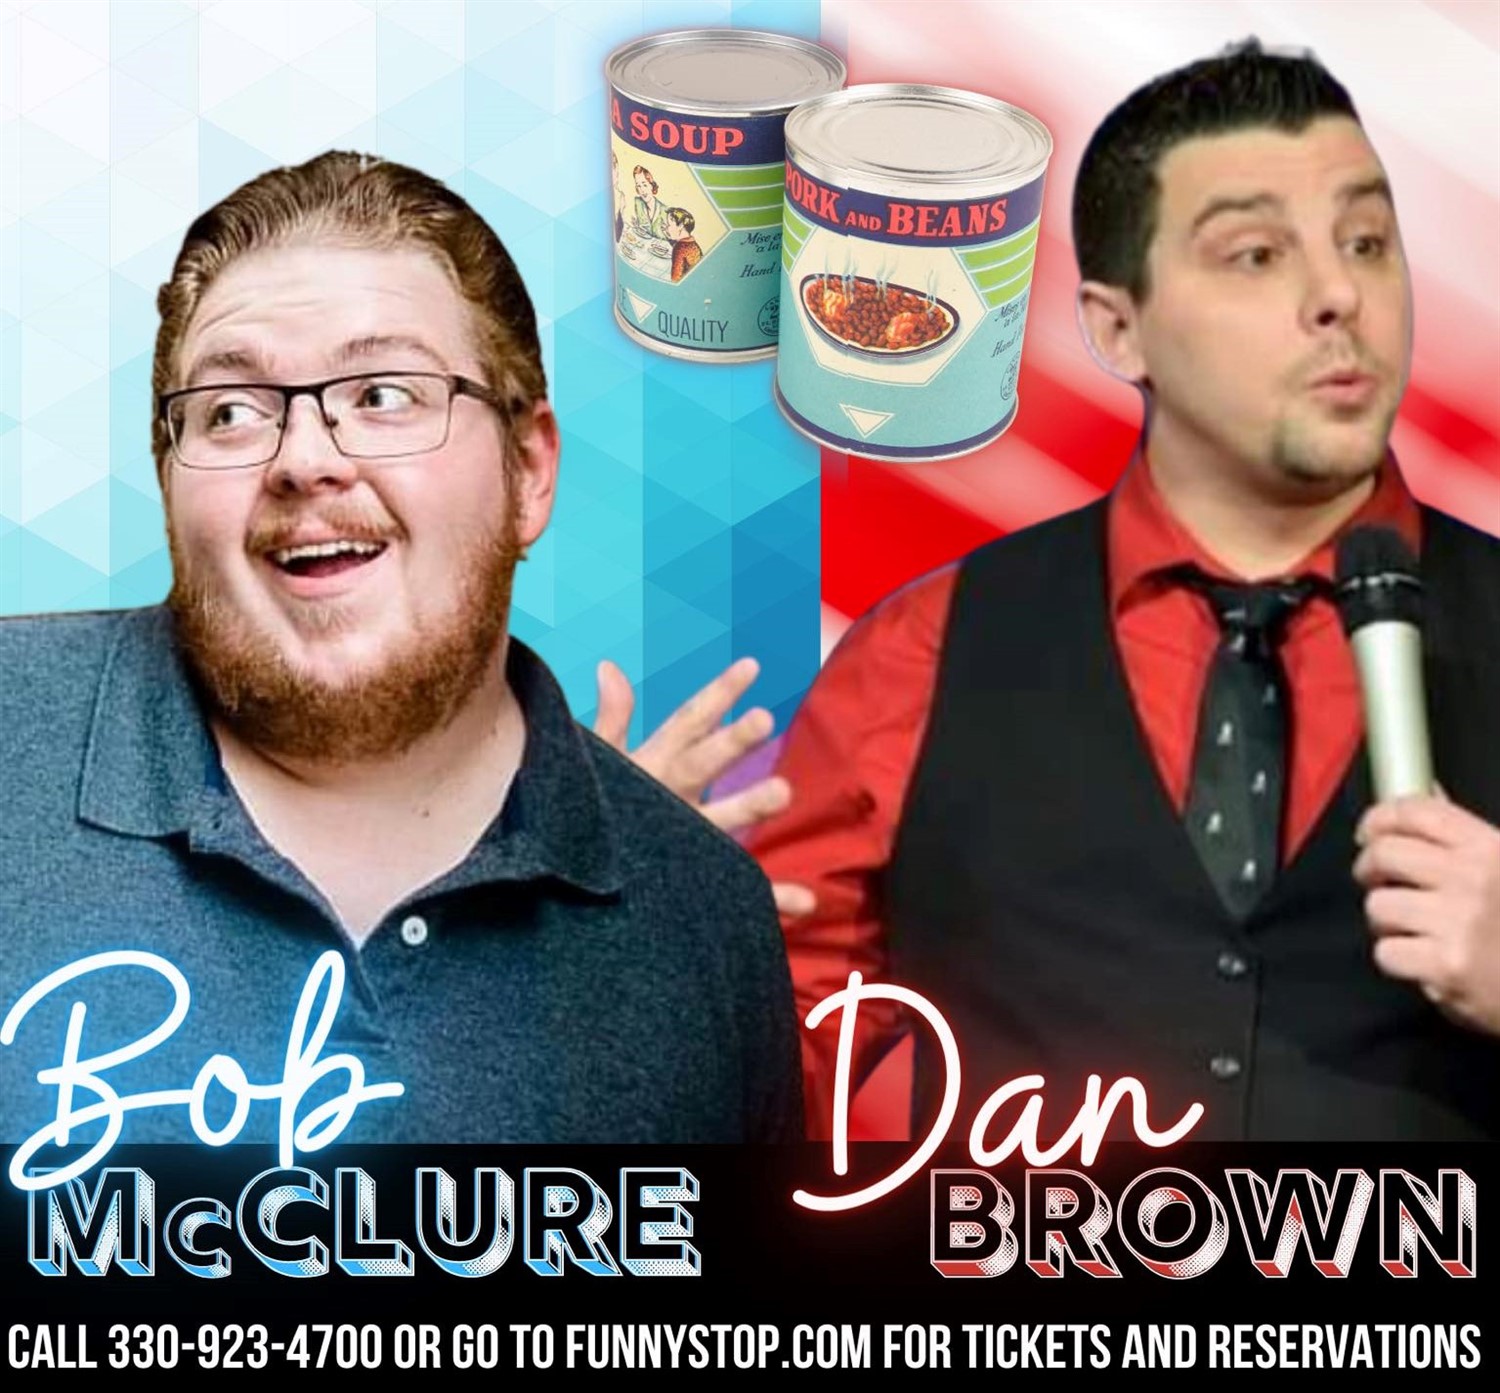 Bob McClure and Dan Brown 9:20pm show Funny Stop Comedy Club on dic. 16, 21:20@Funny Stop Comedy Club - Compra entradas y obtén información enFunny Stop funnystop.online